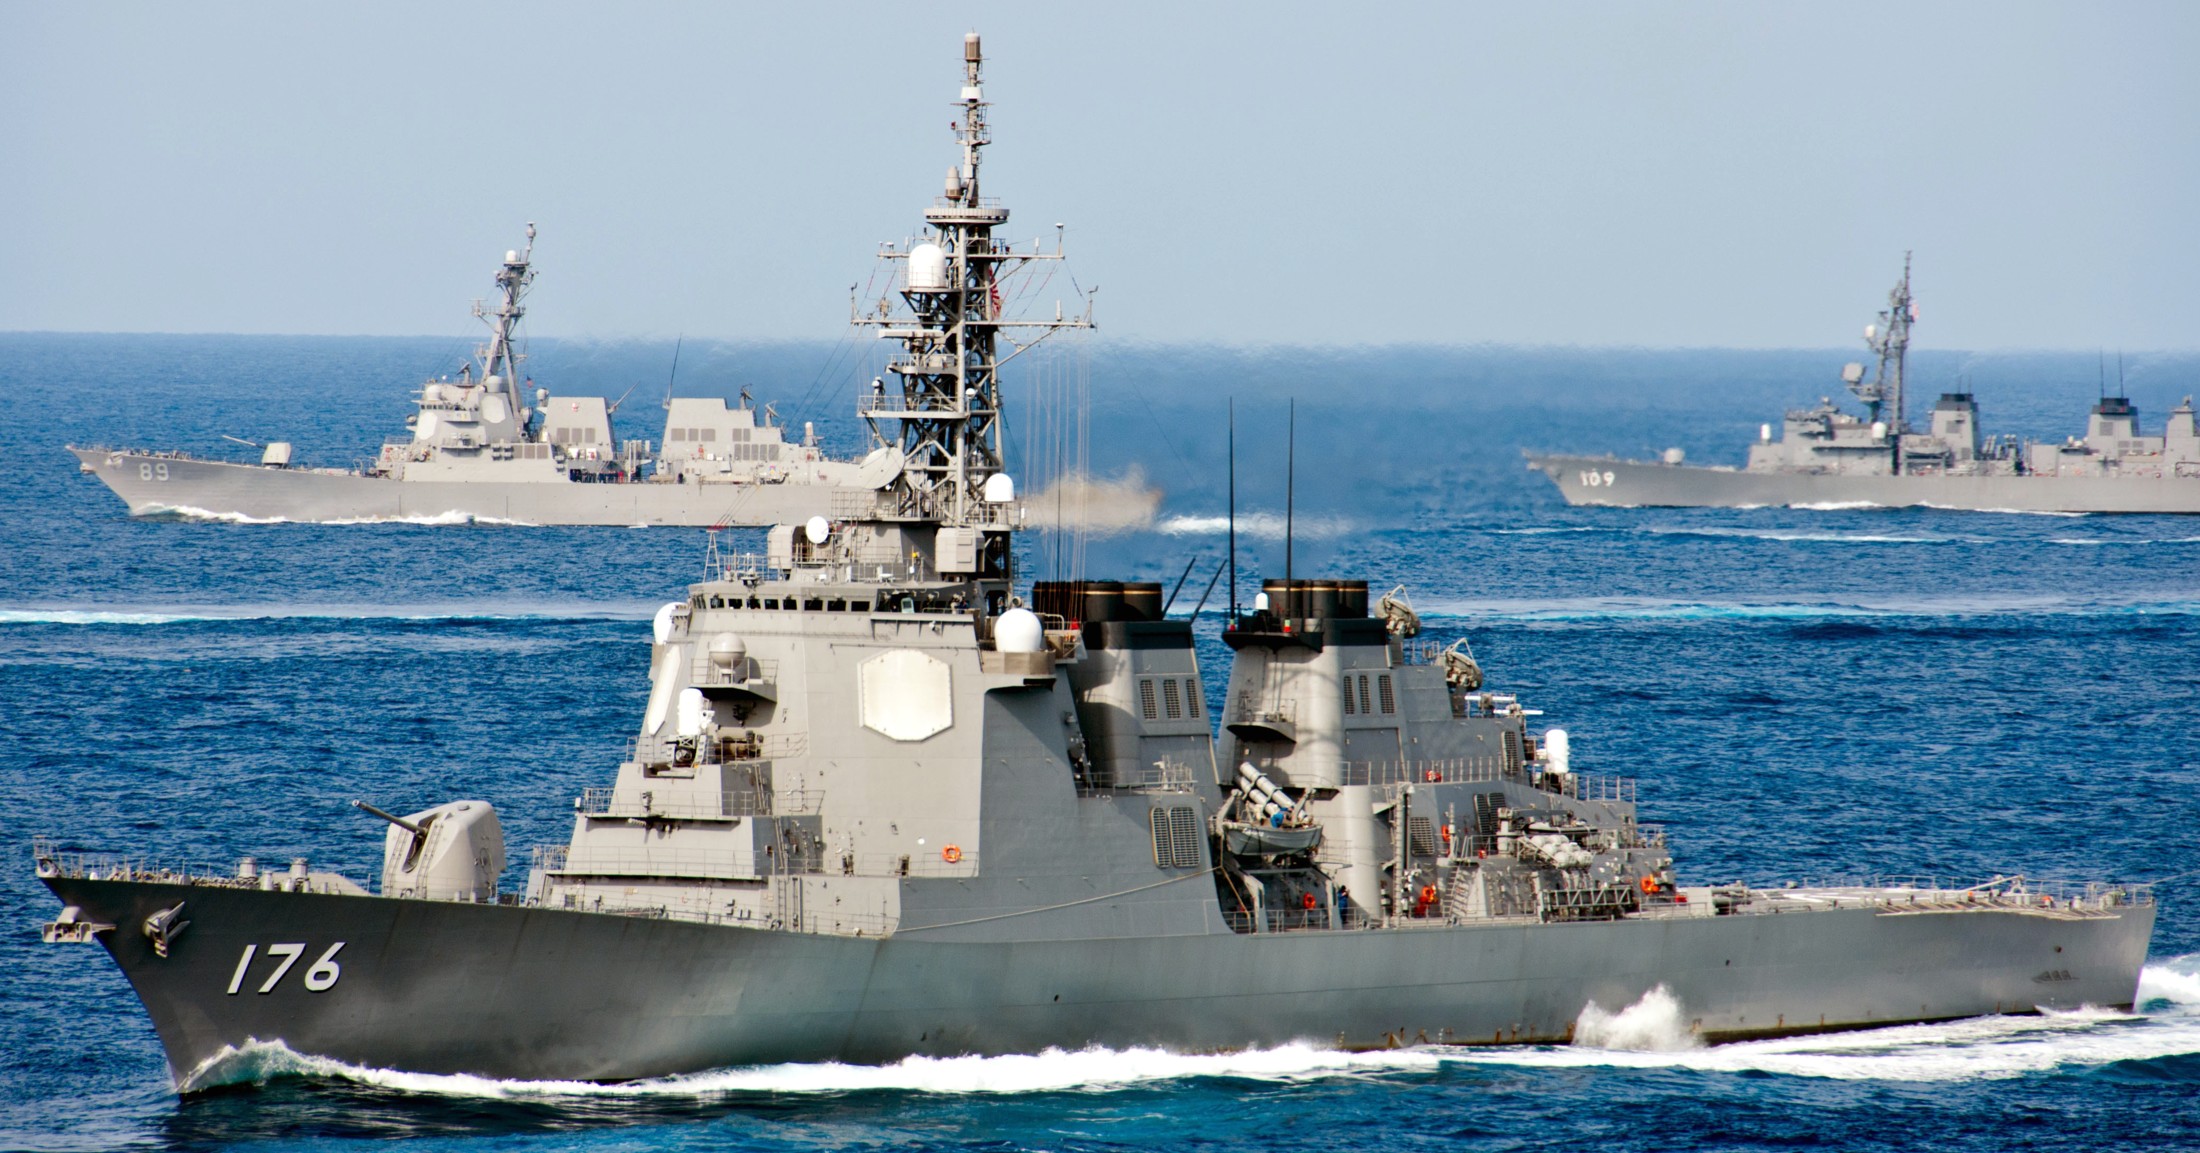 ddg-176 jds chokai kongou class destroyer japan maritime self defense force jmsdf 30